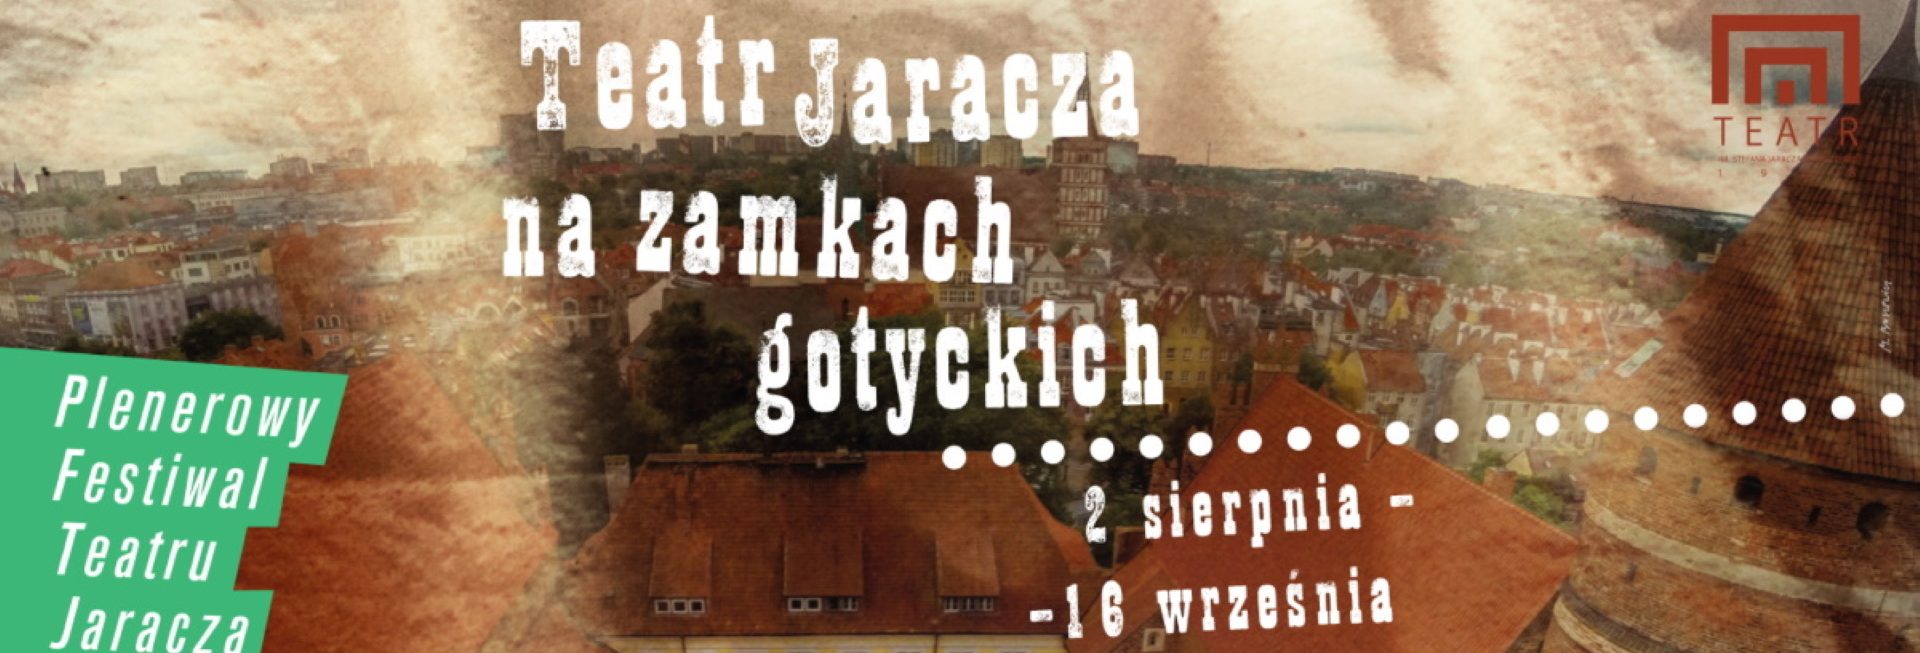 Plakat zapraszający na cykl spektakli - Teatr Jaracza na Zamkach Gotyckich. 